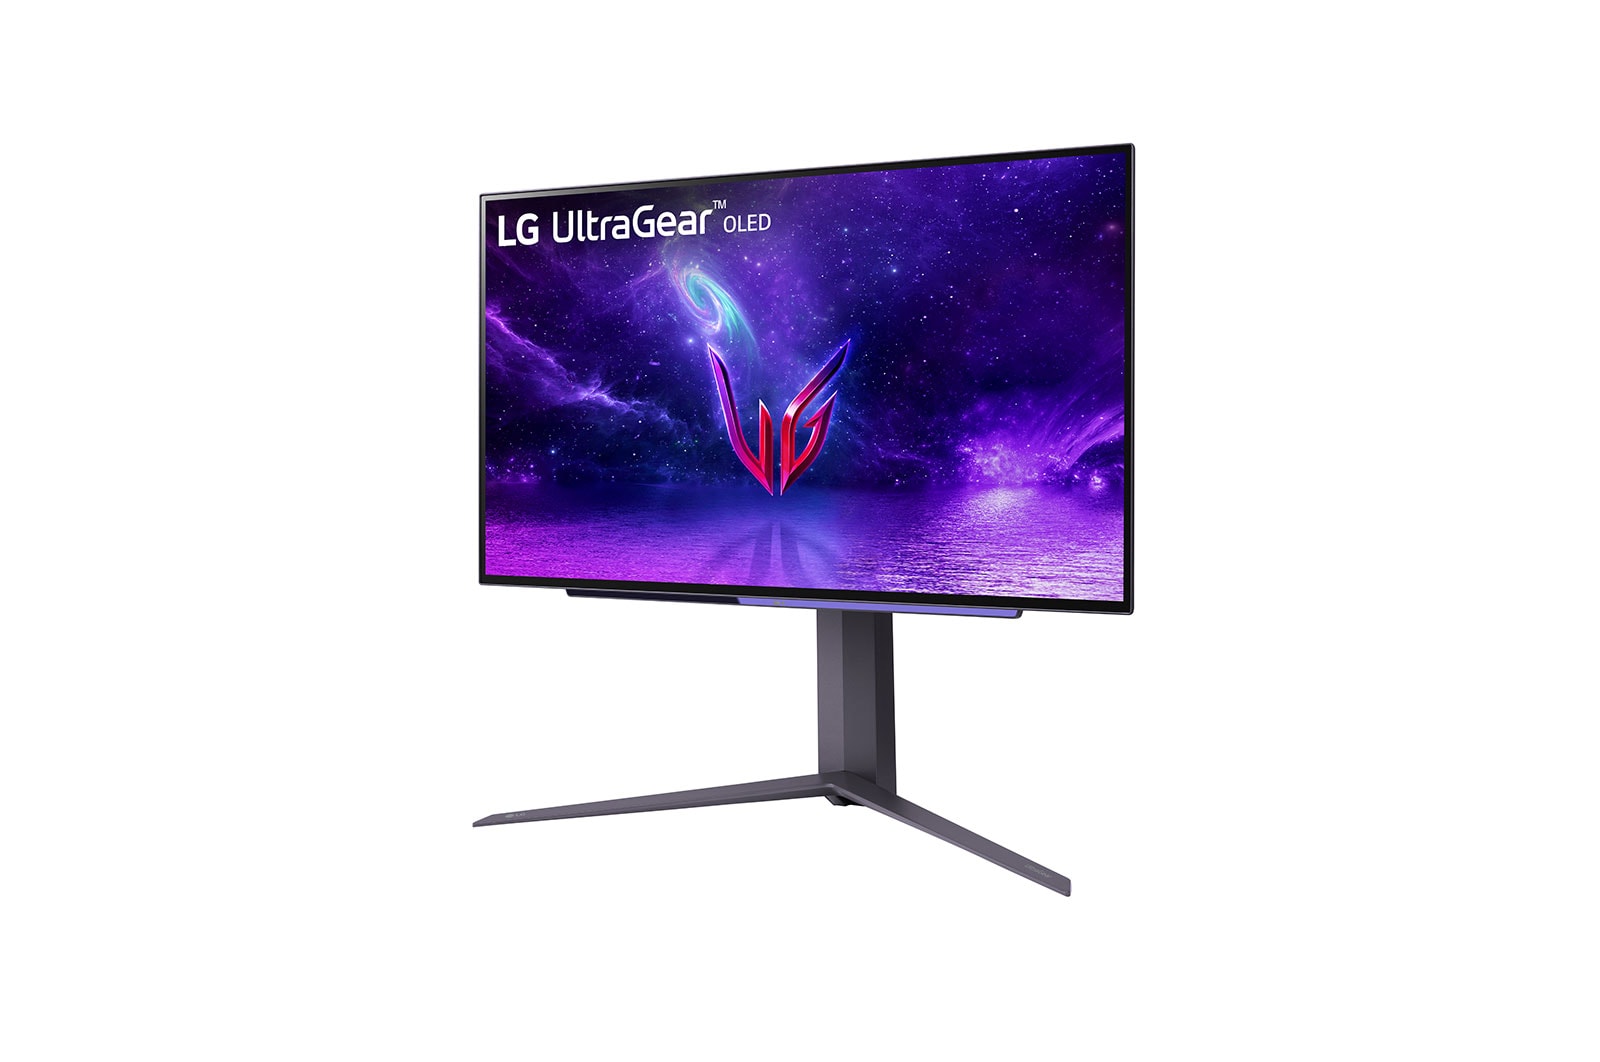 Immagine pubblicata in relazione al seguente contenuto: LG lancia il gaming monitor UltraGear OLED 27-inch con refresh rate fino a 240Hz | Nome immagine: news33884_LG-UltraGear-OLED_27-inch_3.jpg